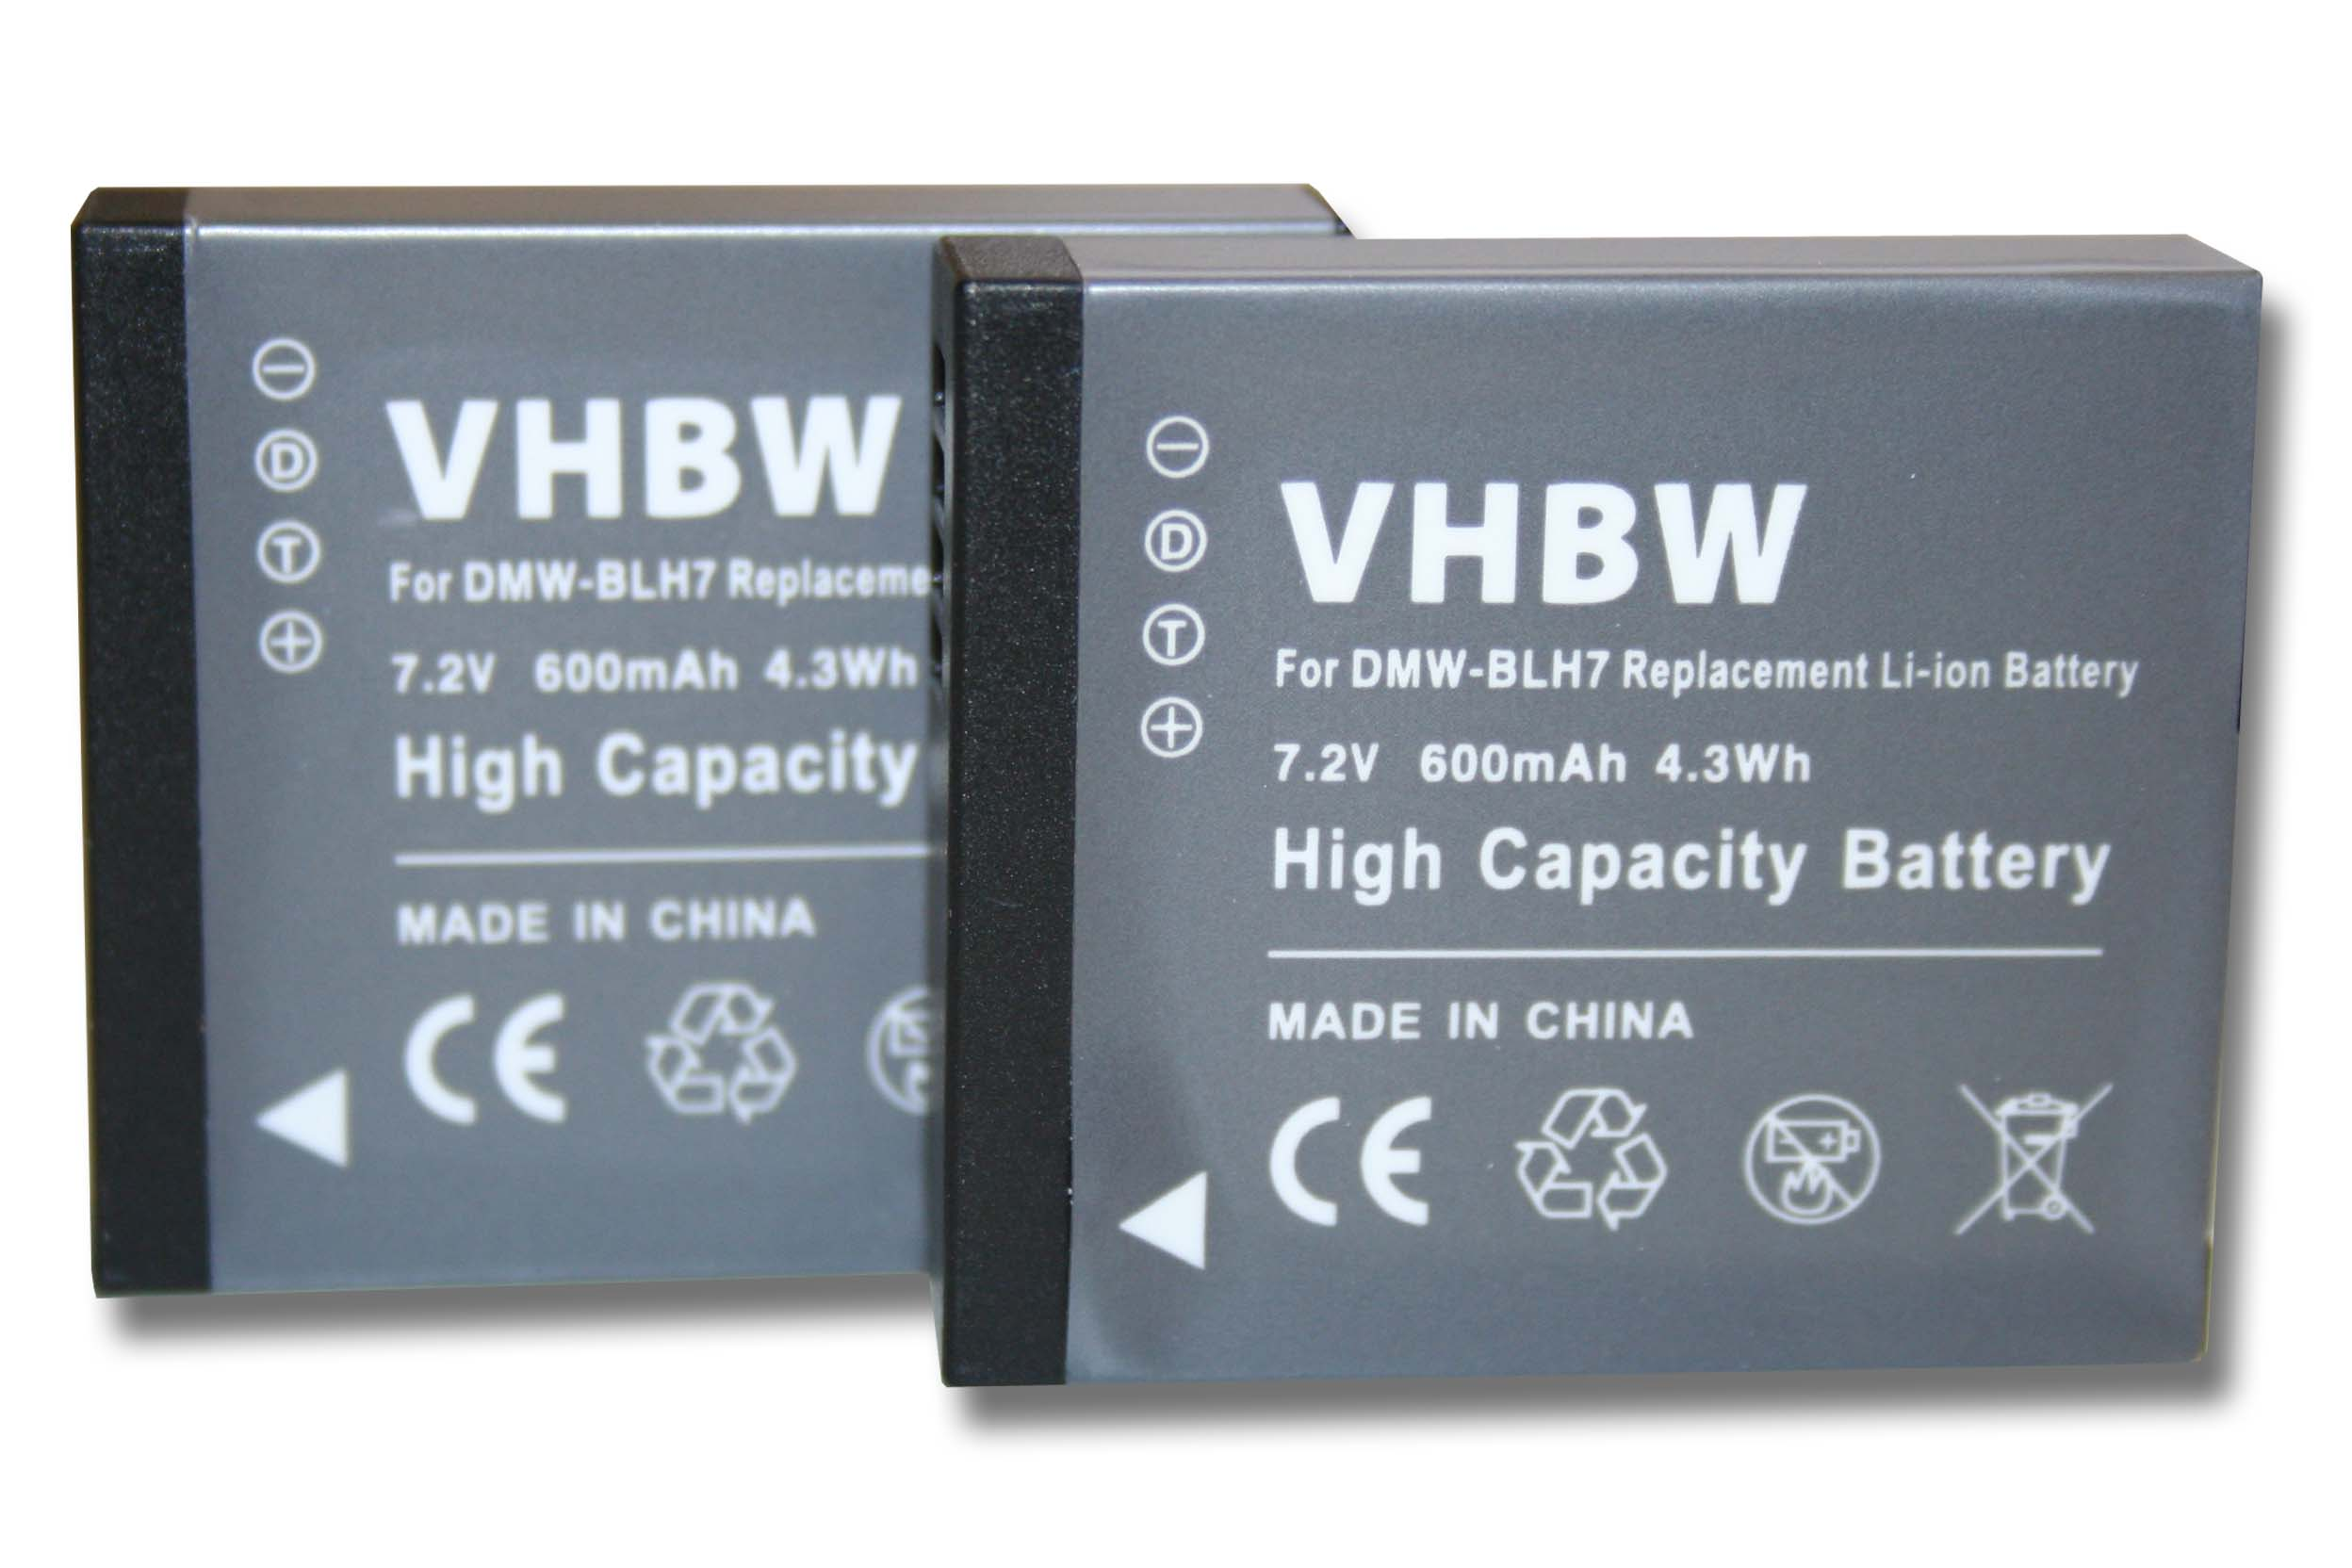 VHBW Ersatz für - Kamera, Volt, DMW-BLH7PP für Akku DMW-BLH7E, DMW-BLH7, 7.2 Li-Ion 600 DMW-BLHPP, Panasonic